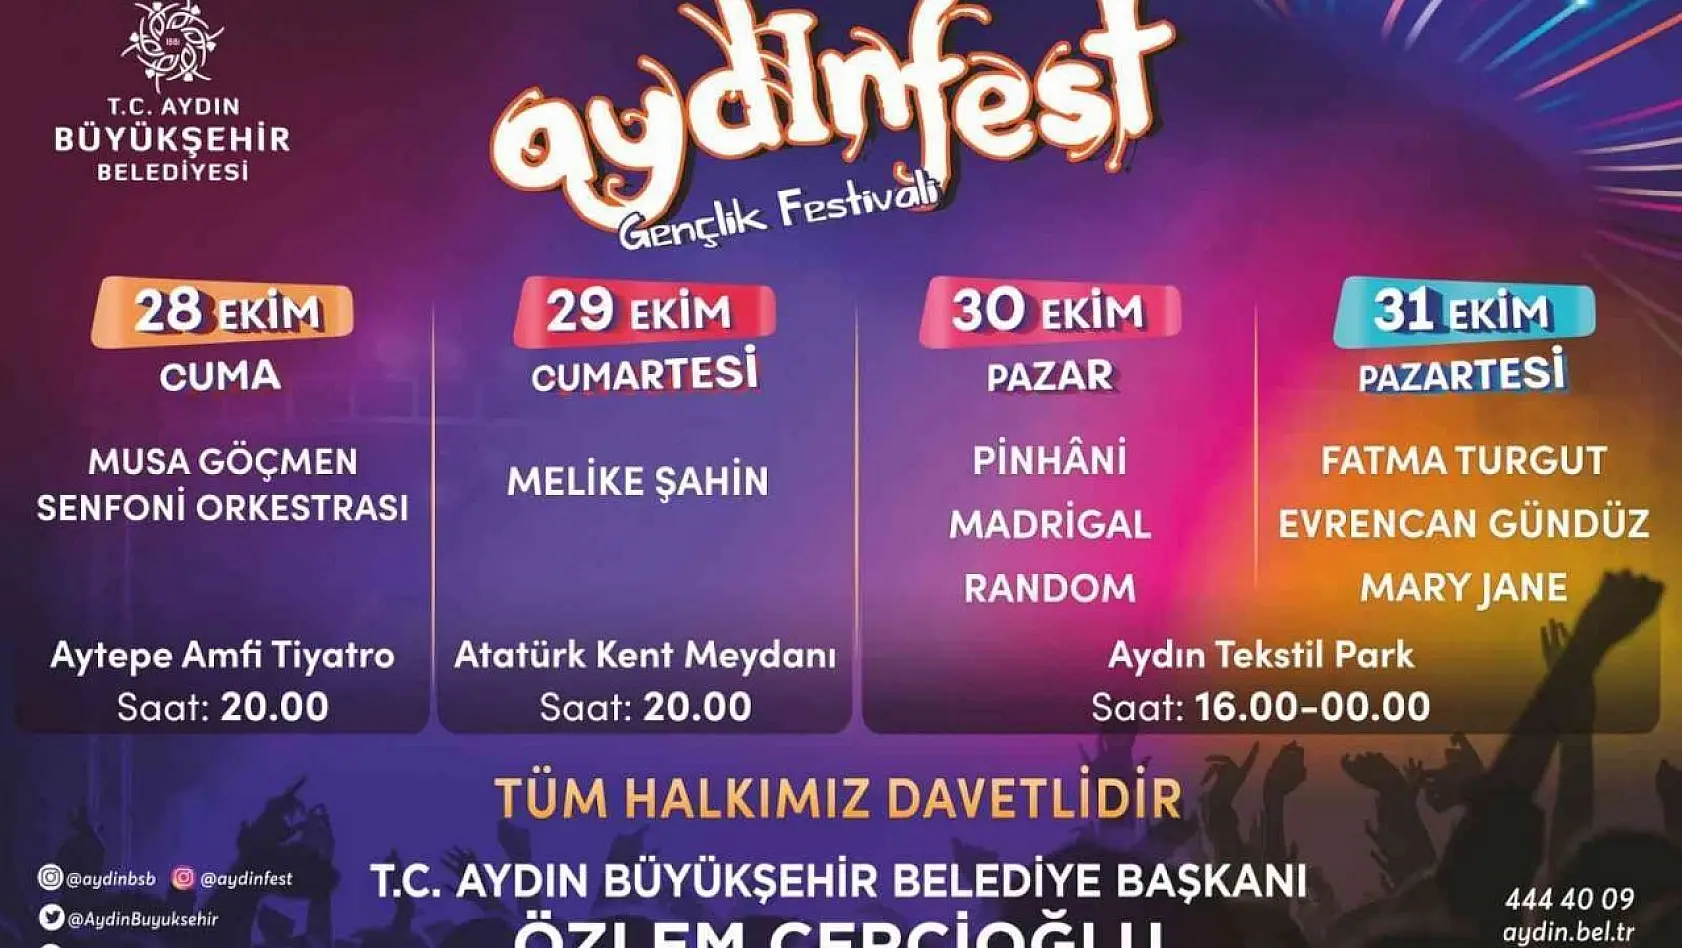 Aydın Büyükşehir Belediyesi cumhuriyet coşkusunu Aydınfest ile birlikte kutlayacak